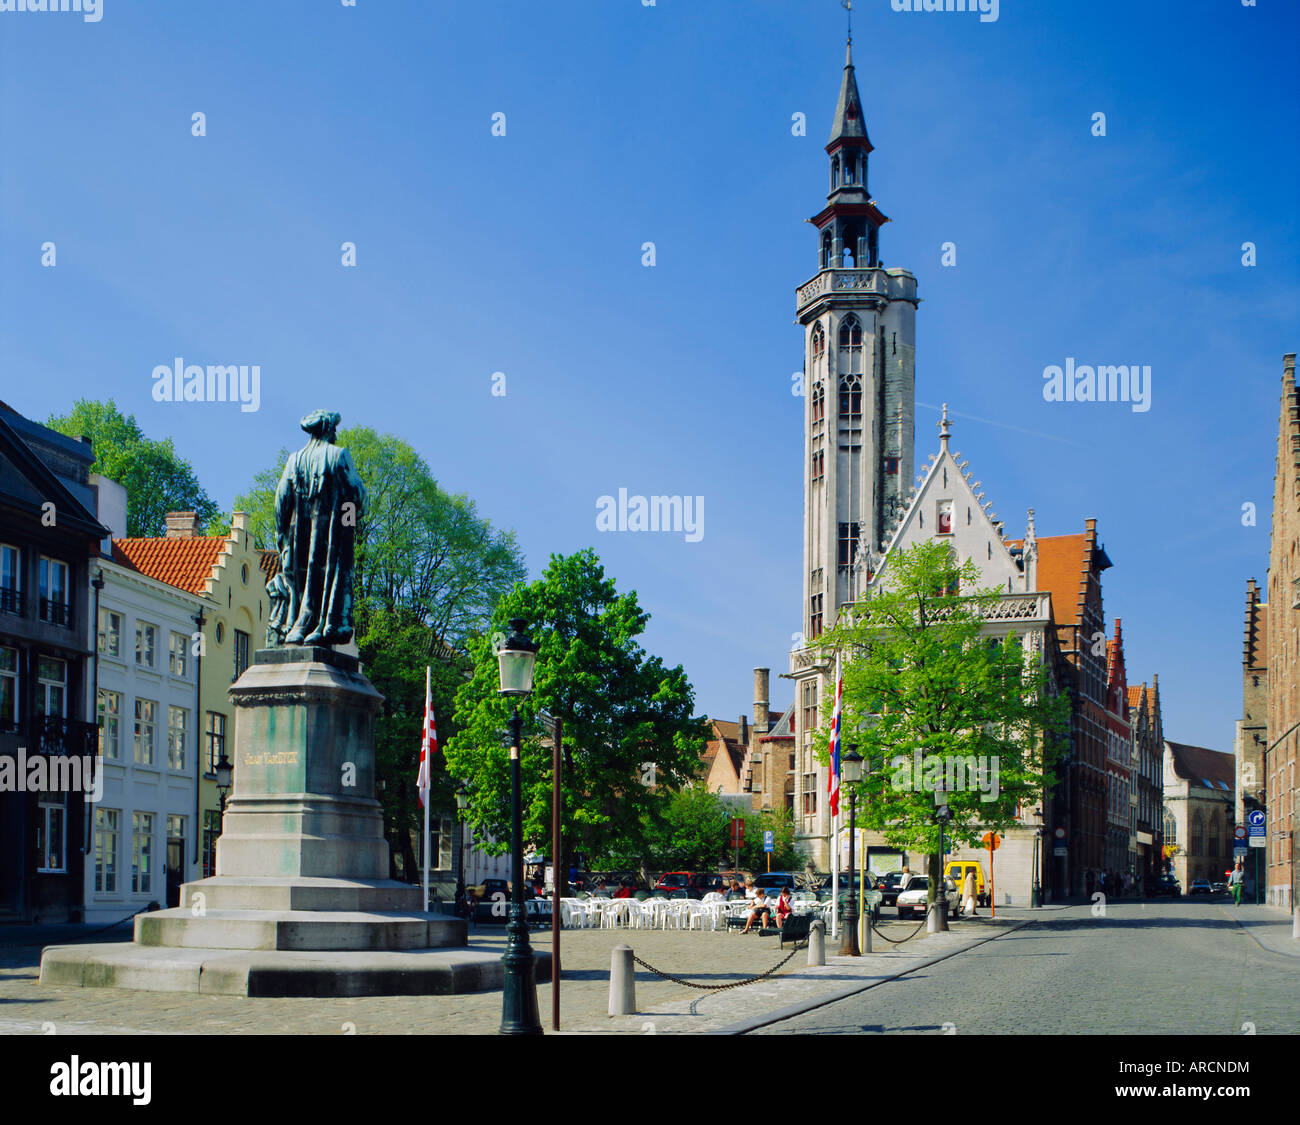 Poorters Loge and Jean van Eyck statue, Bruges, Belgium Stock Photo